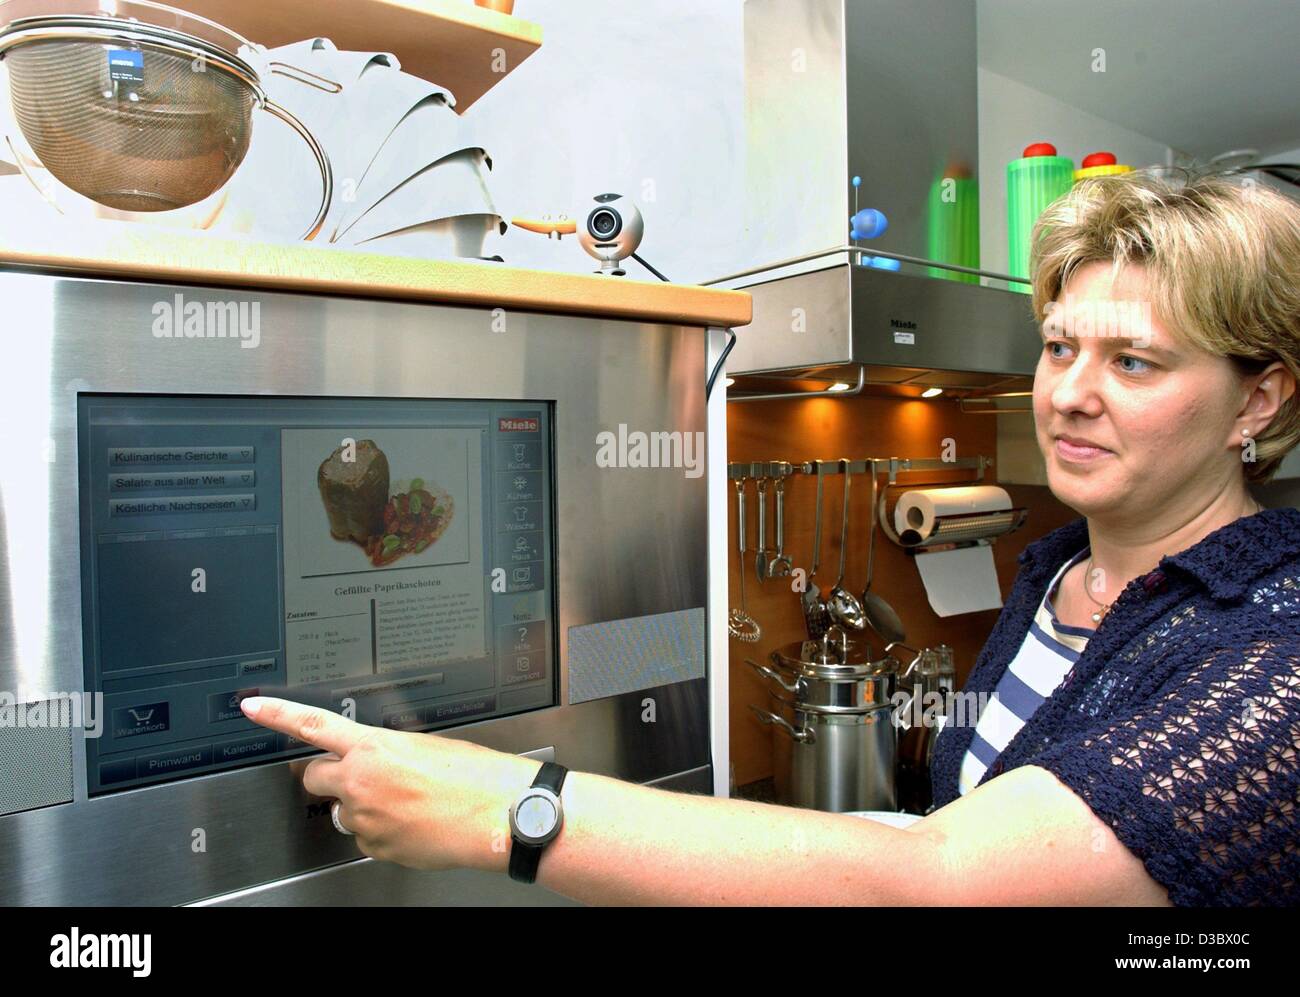 (Dpa) - Sabine Hildebrand pulsa un botón en la pantalla táctil de una despensa de cocina en una casa de prueba del Instituto Fraunhofer de circuitos microelectrónicos y sistemas (IMS) en Duisburgo, Alemania, 28 de junio de 2003. El Instituto junto con los fabricantes de los equipos domésticos desarrollar el comp Foto de stock